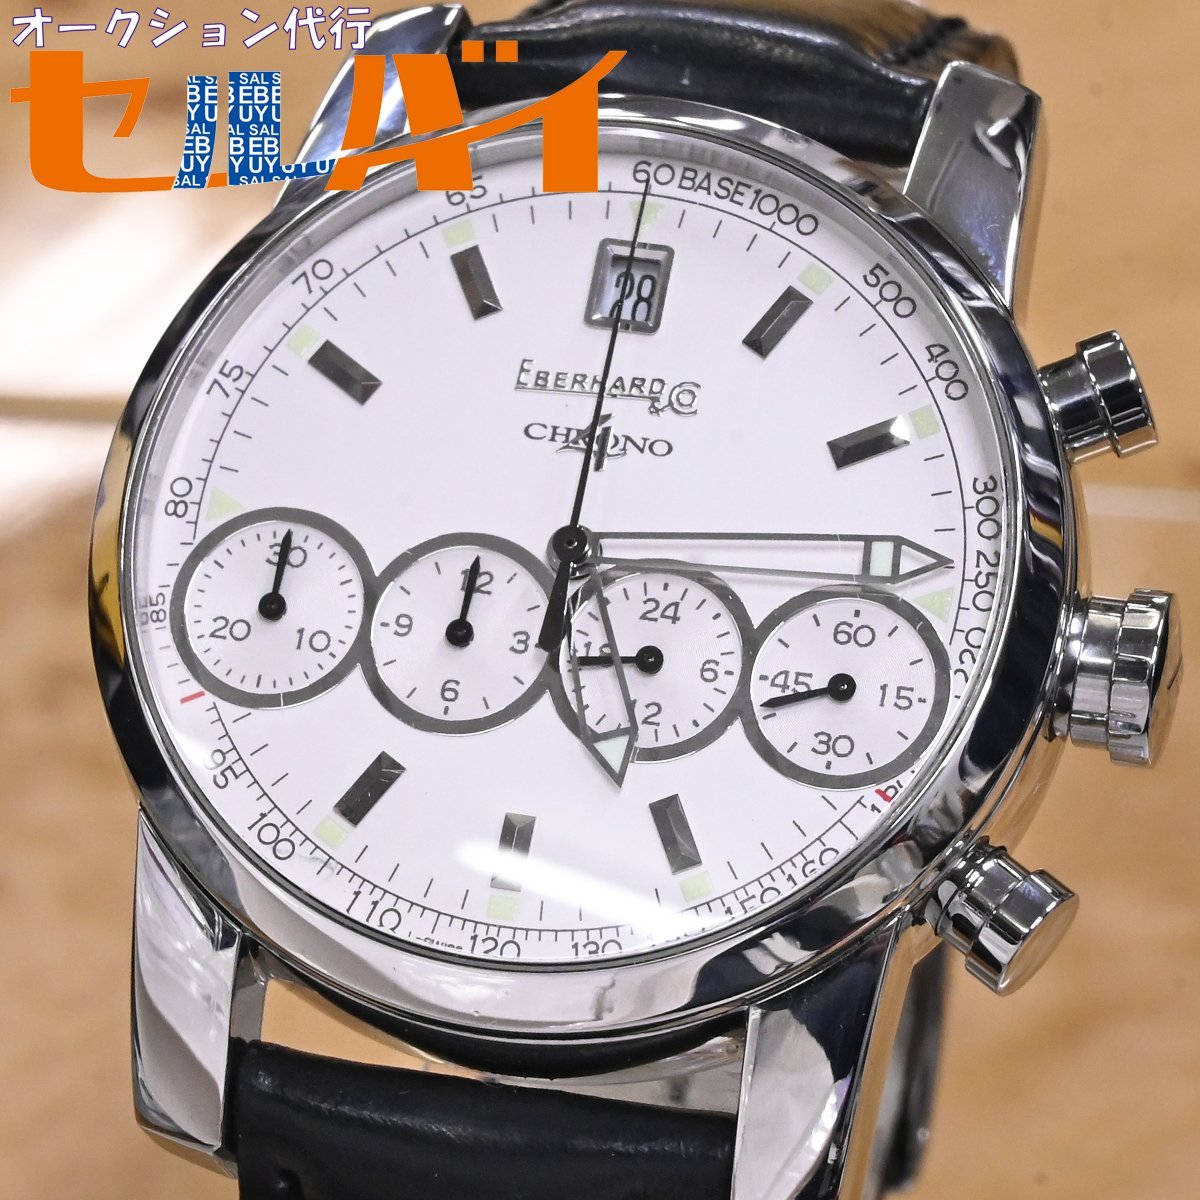 オリジナル 本物 CHRONO4 Eberhard＆Co. 男性用自動巻腕時計 メンズ